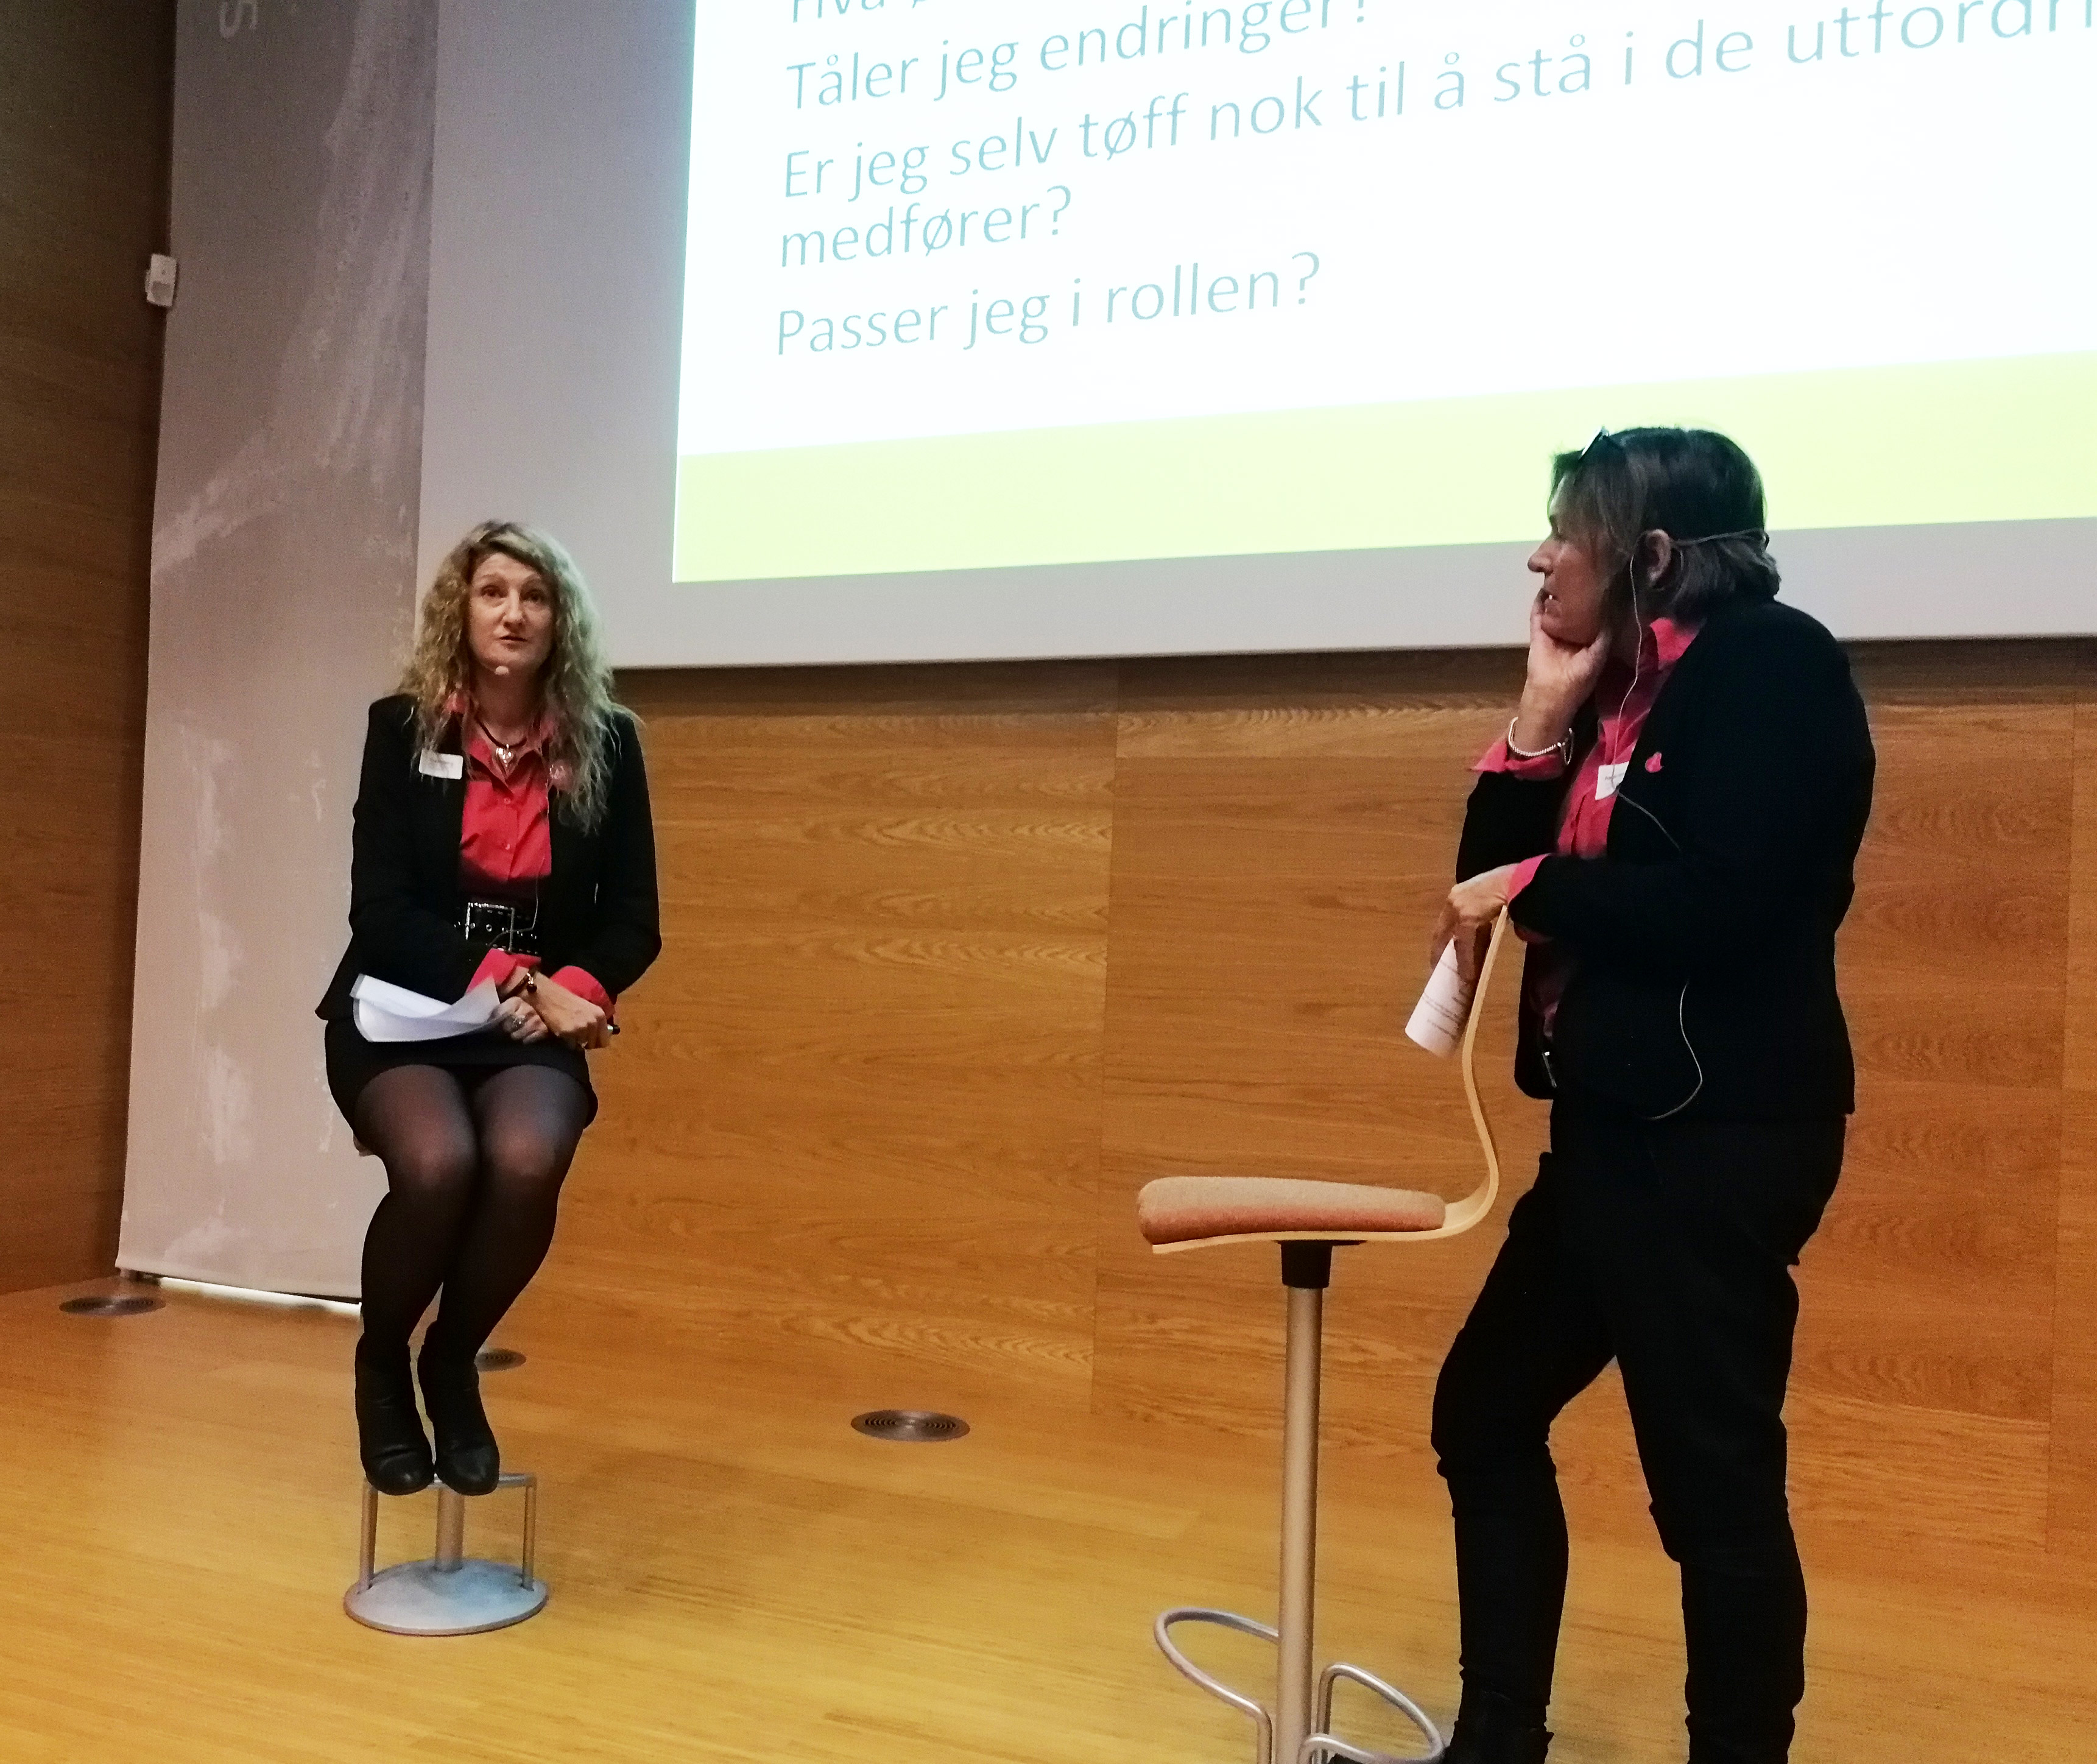 Frøydis Høyem og Mia Solberg, tidligere avdelingsledere i Drammen, nå sertifisører, ga gode innspill til ledelsen gjennom rollespill